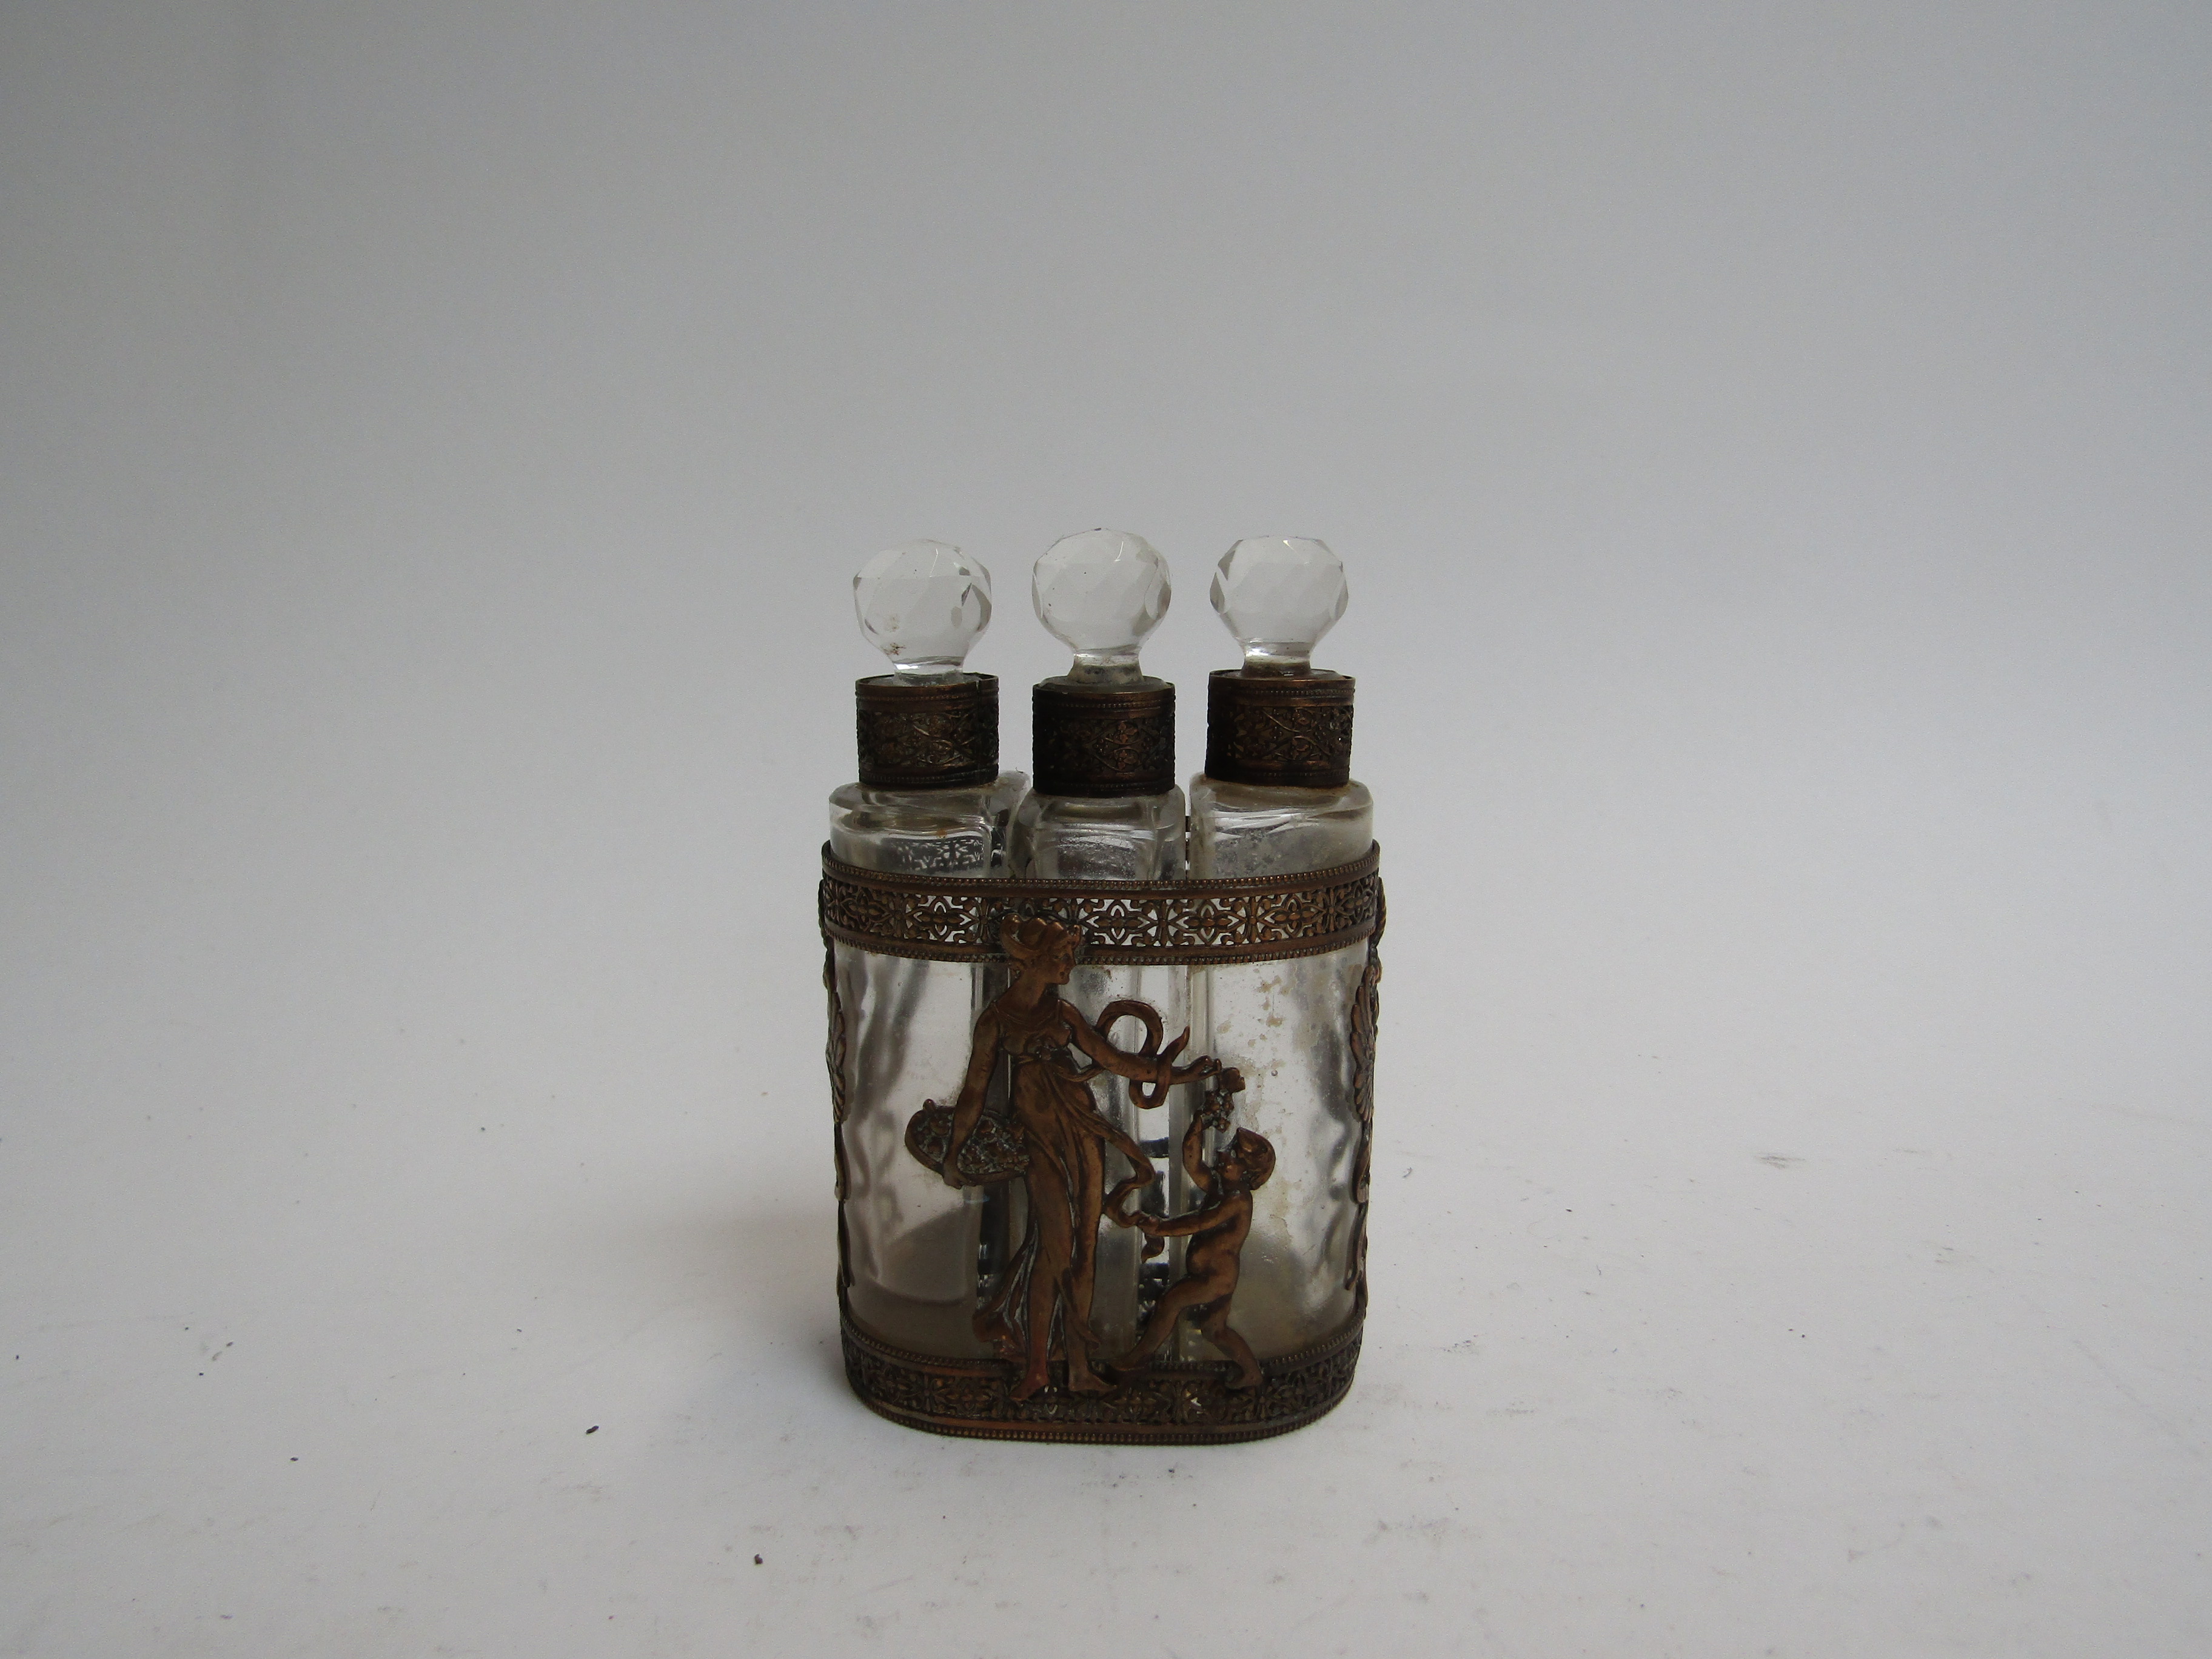 An Edwardian three bottle scent bottle in ornate case,